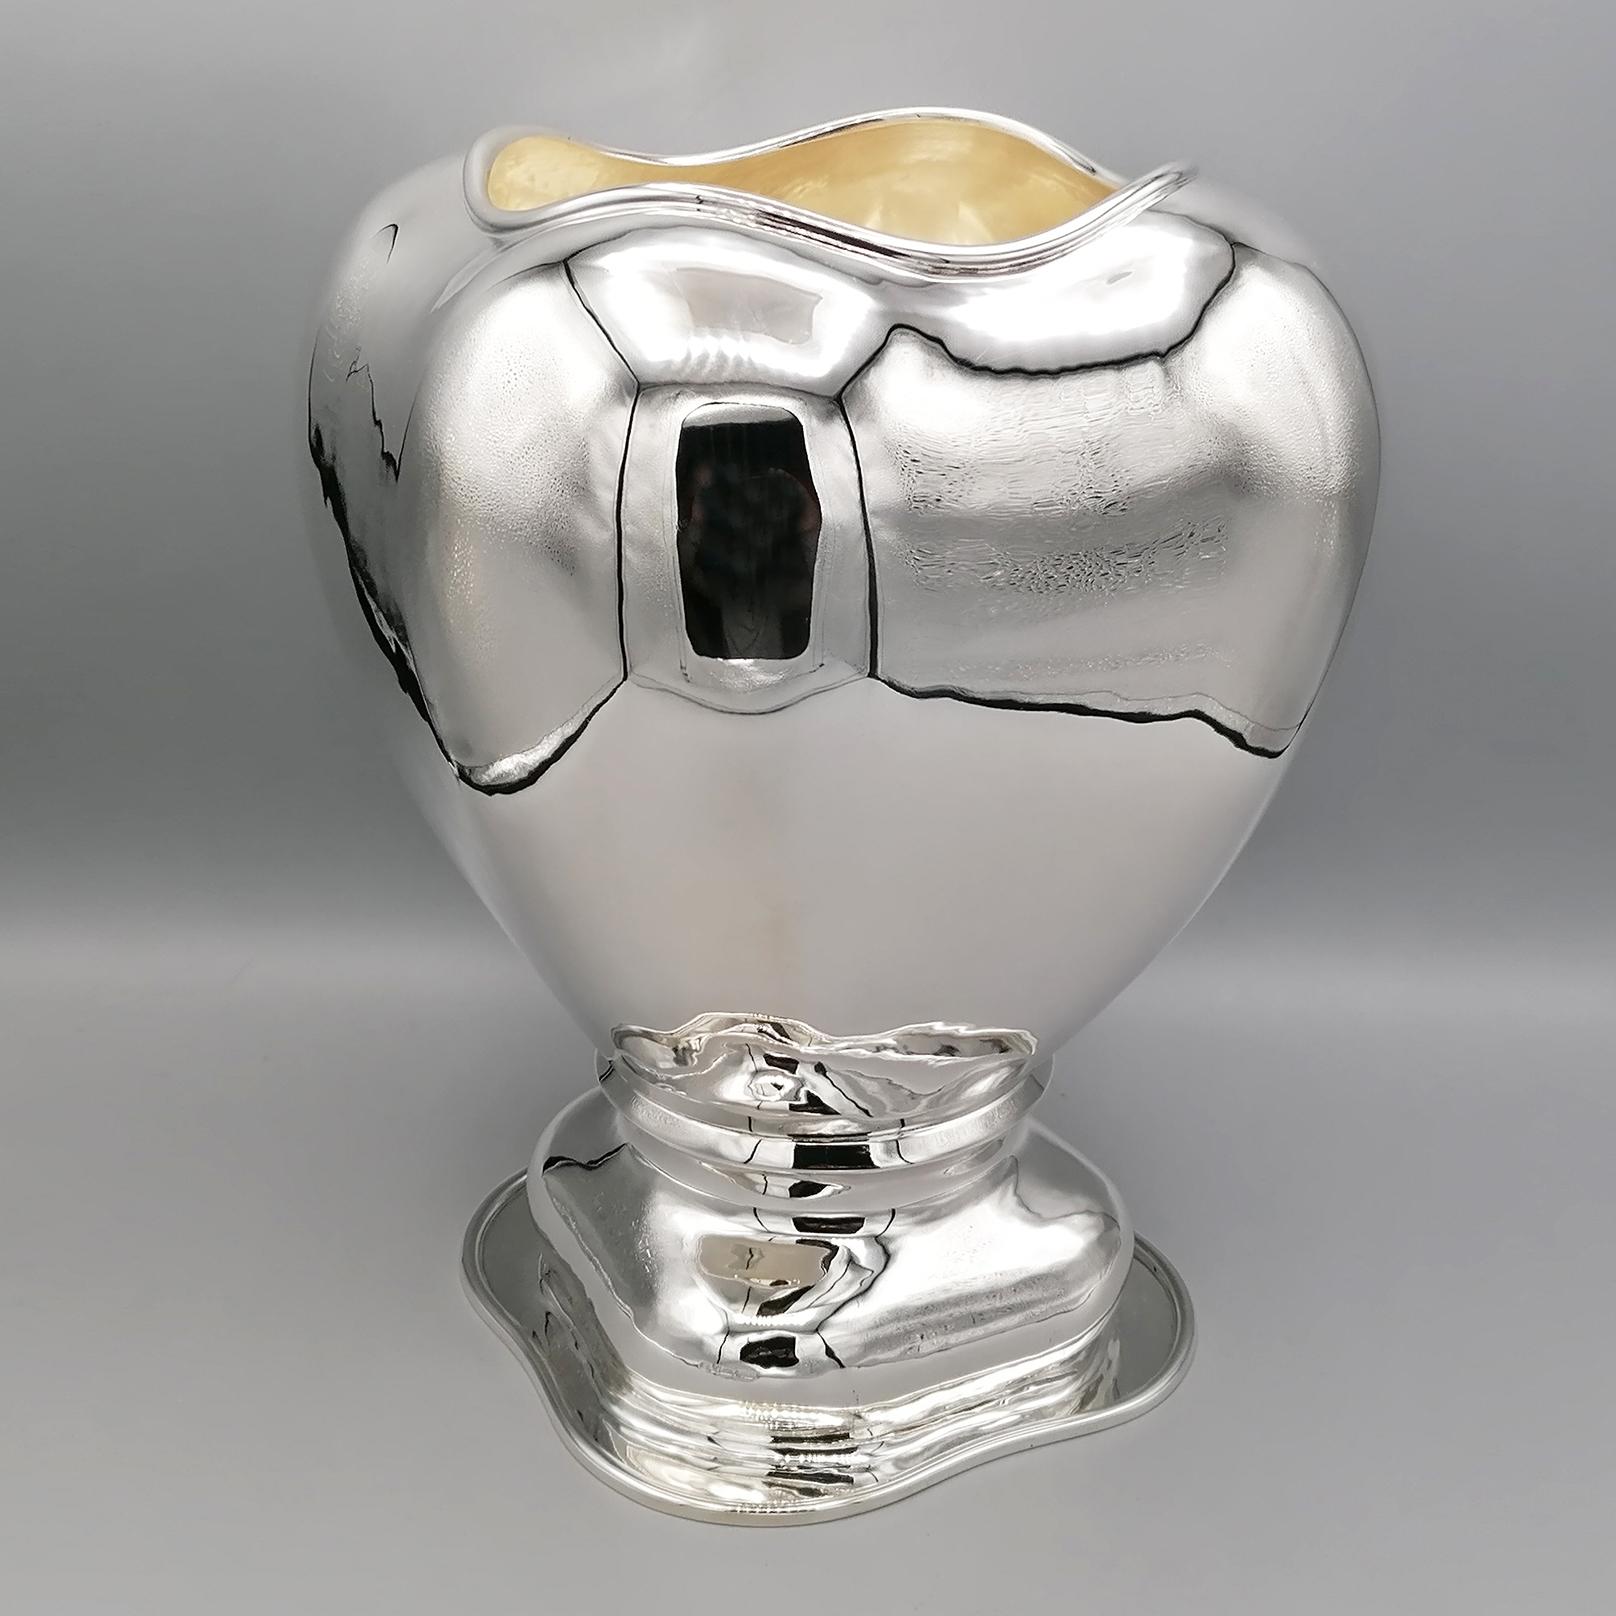 Sterlin Silber Vase. 
Der glatte Körper ist geformt und leicht gehämmert
Der Fuß folgt harmonisch der Form des Körpers
Vollständig handgefertigt

Diese Vase wurde untersucht, um ein Gleichgewicht zwischen dem Klassizismus des Objekts und der